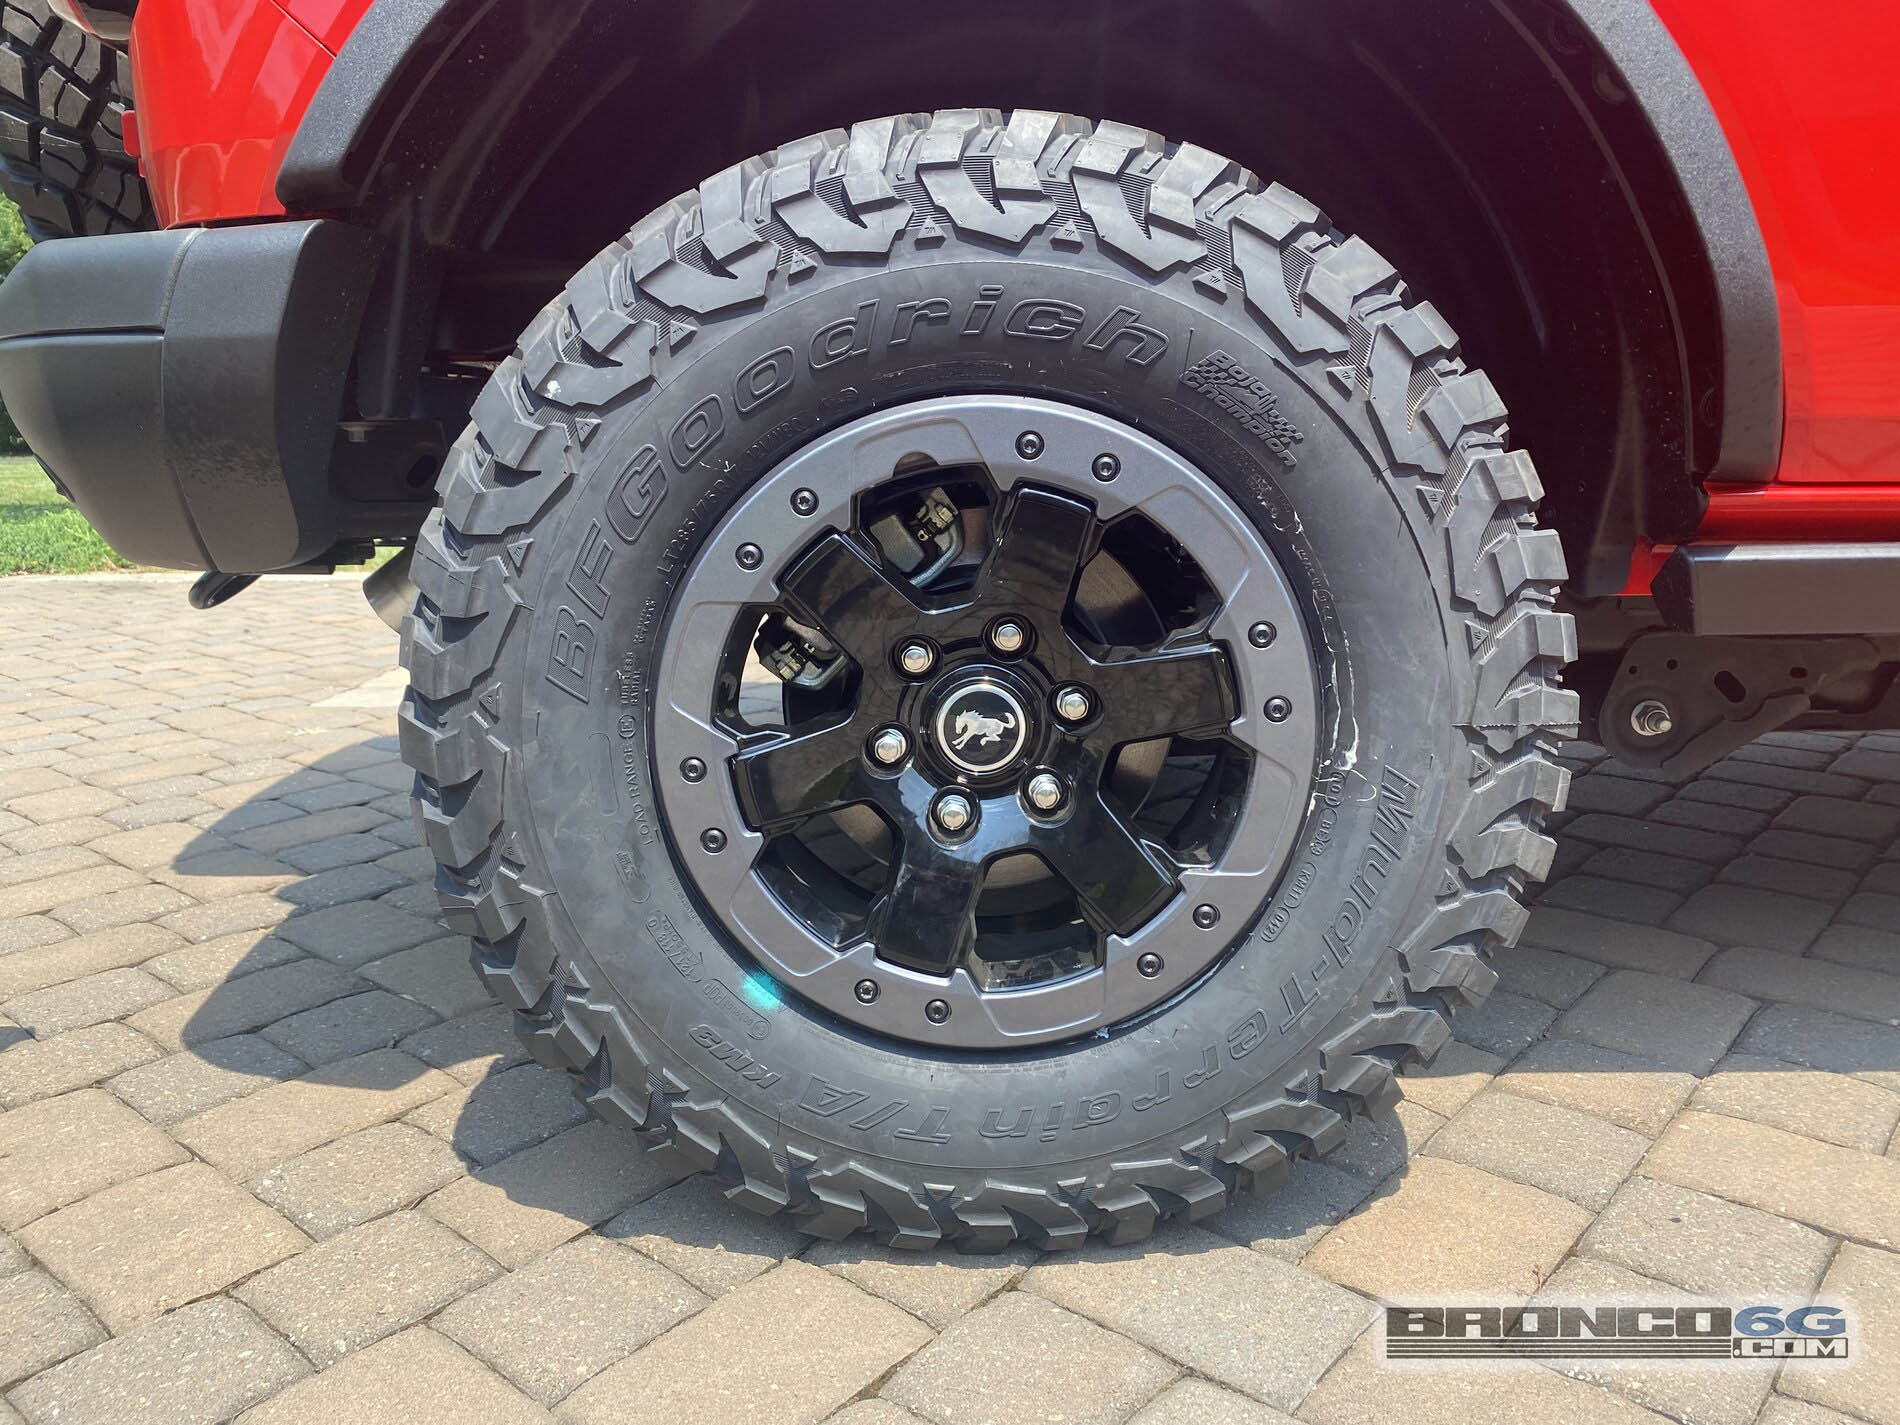 Ford Bronco BFG KM3 M/T Tires (285/75/17) Fitted on 2021 Bronco Badlands 7DE2EEB1-0201-48D5-875A-793692420431